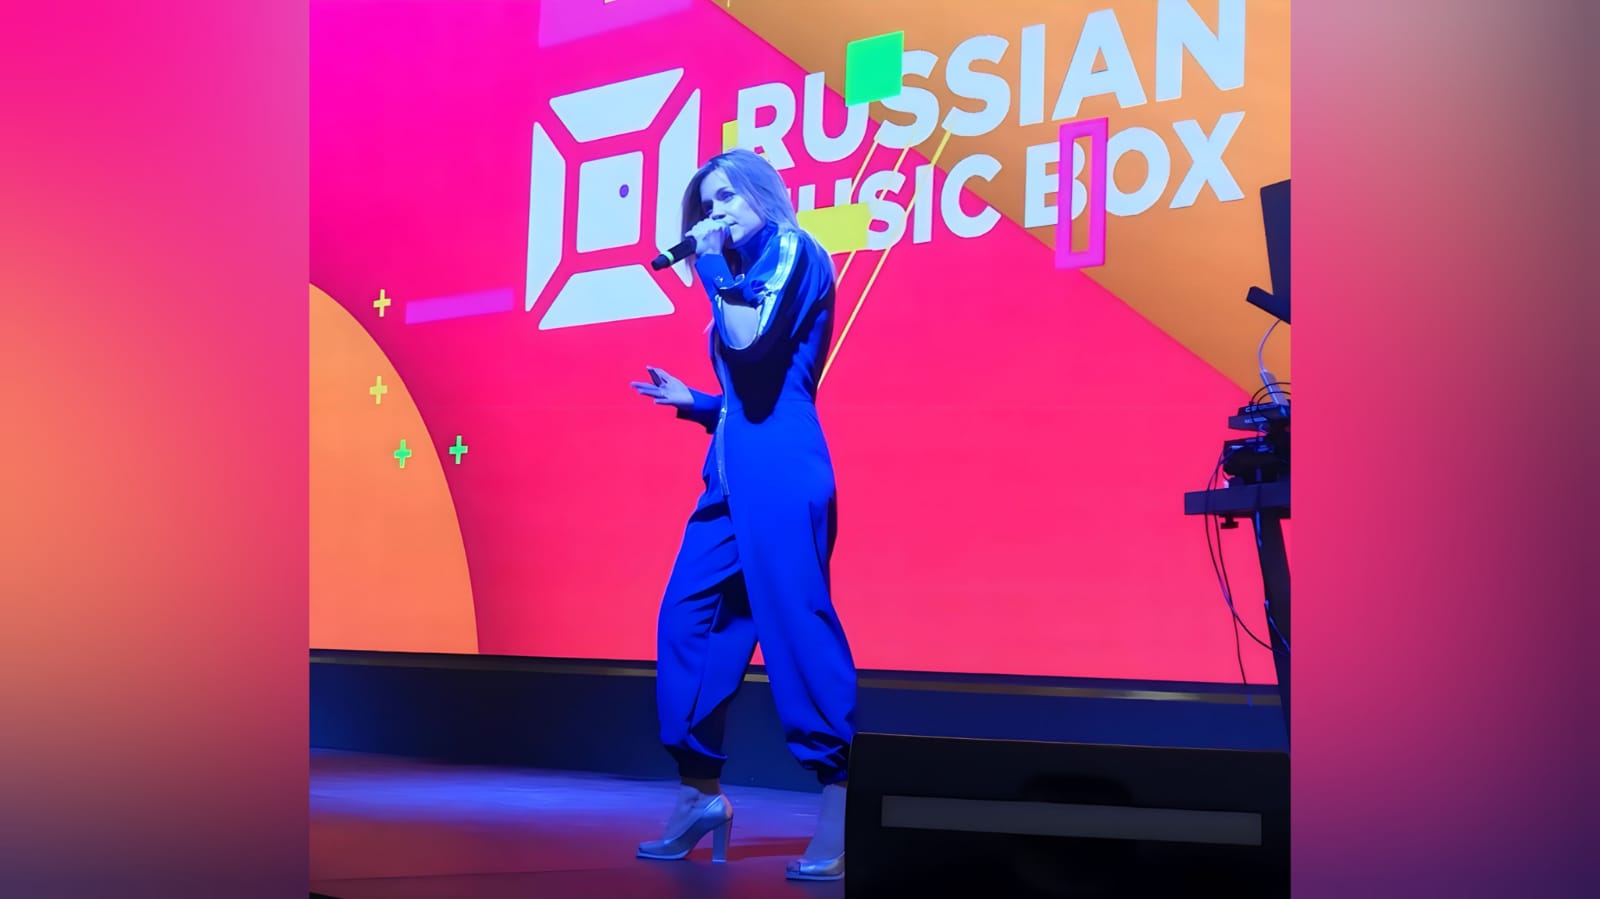 Катя Чехова
«Крылья»
Russian Music Box